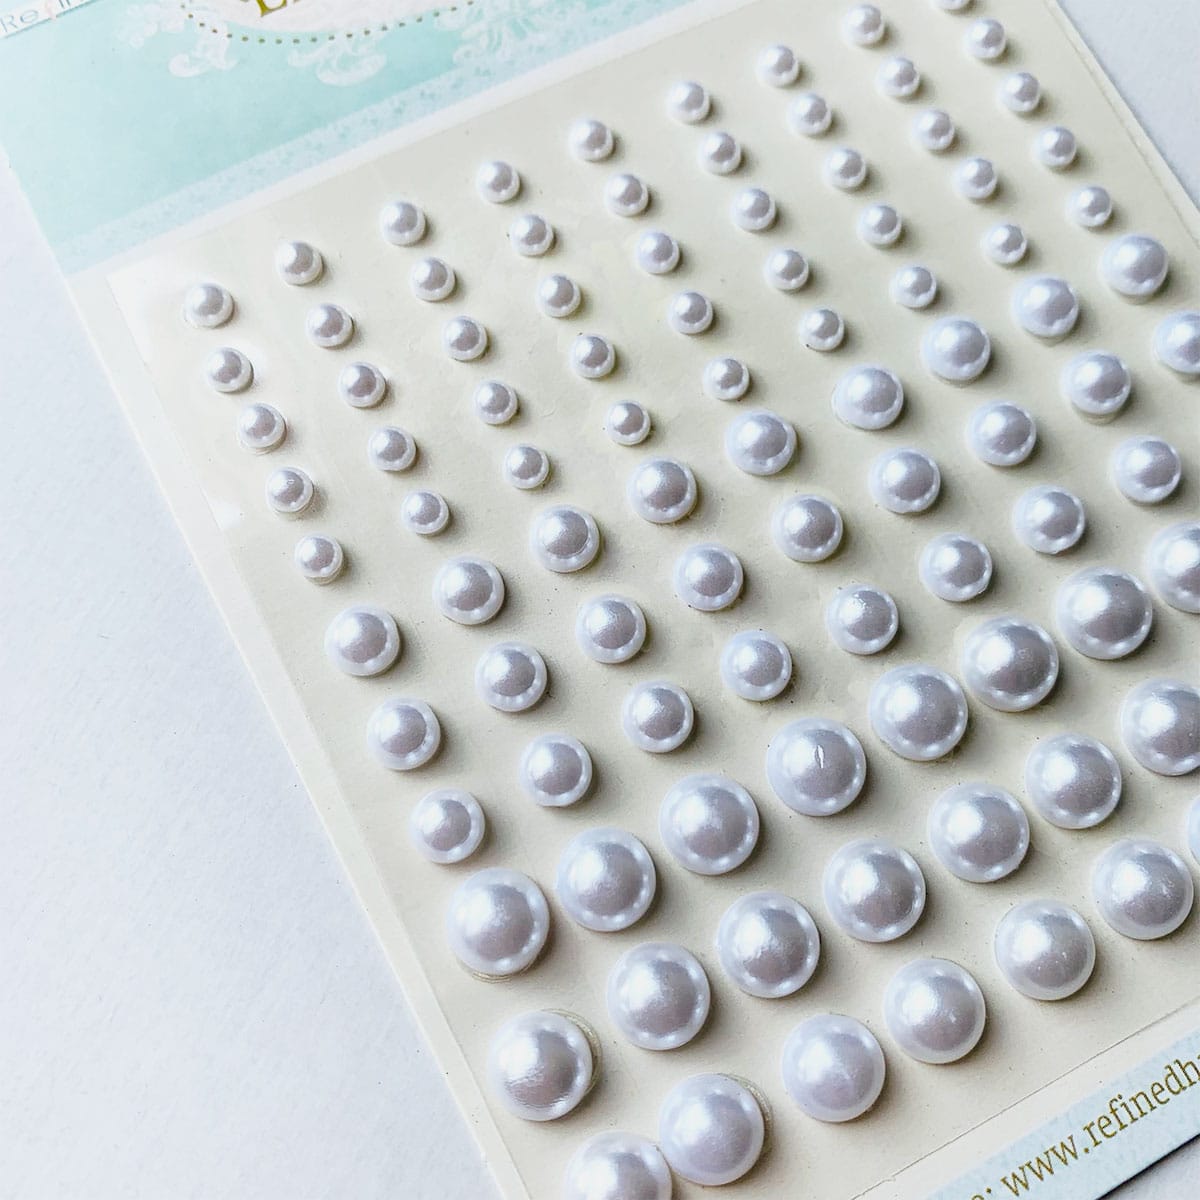 Lot de 260 perles en plastique - Mélange de perles - Effet strass -  Couleurs mélangées - 6 mm à 22 mm - Kit de bricolage R385 x 2